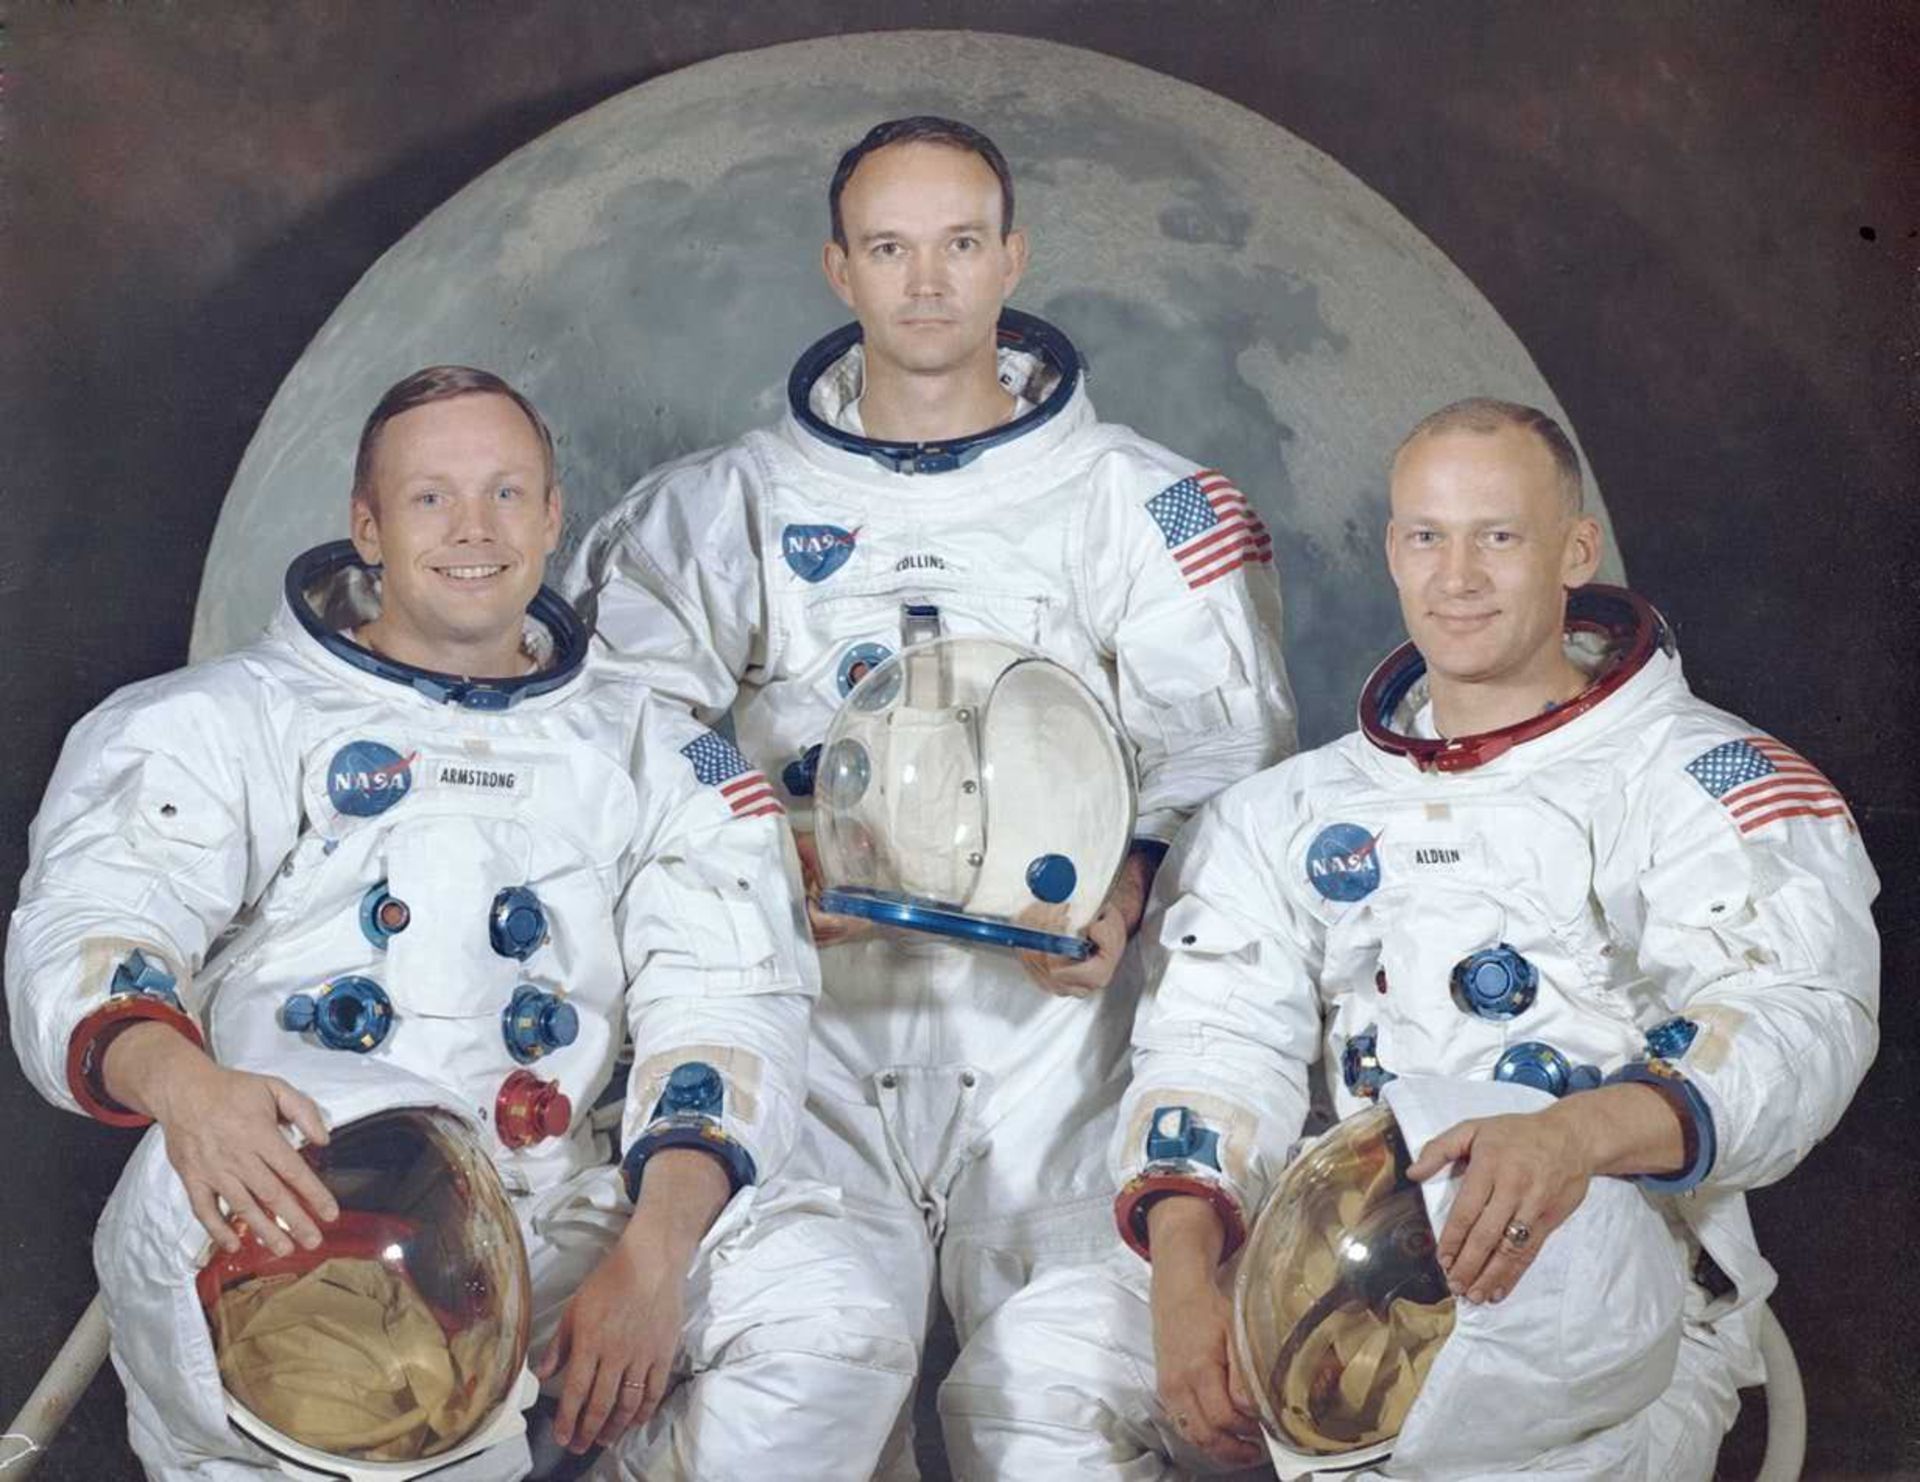 مرجع متخصصين ايران Apollo 11 / آپولو 11